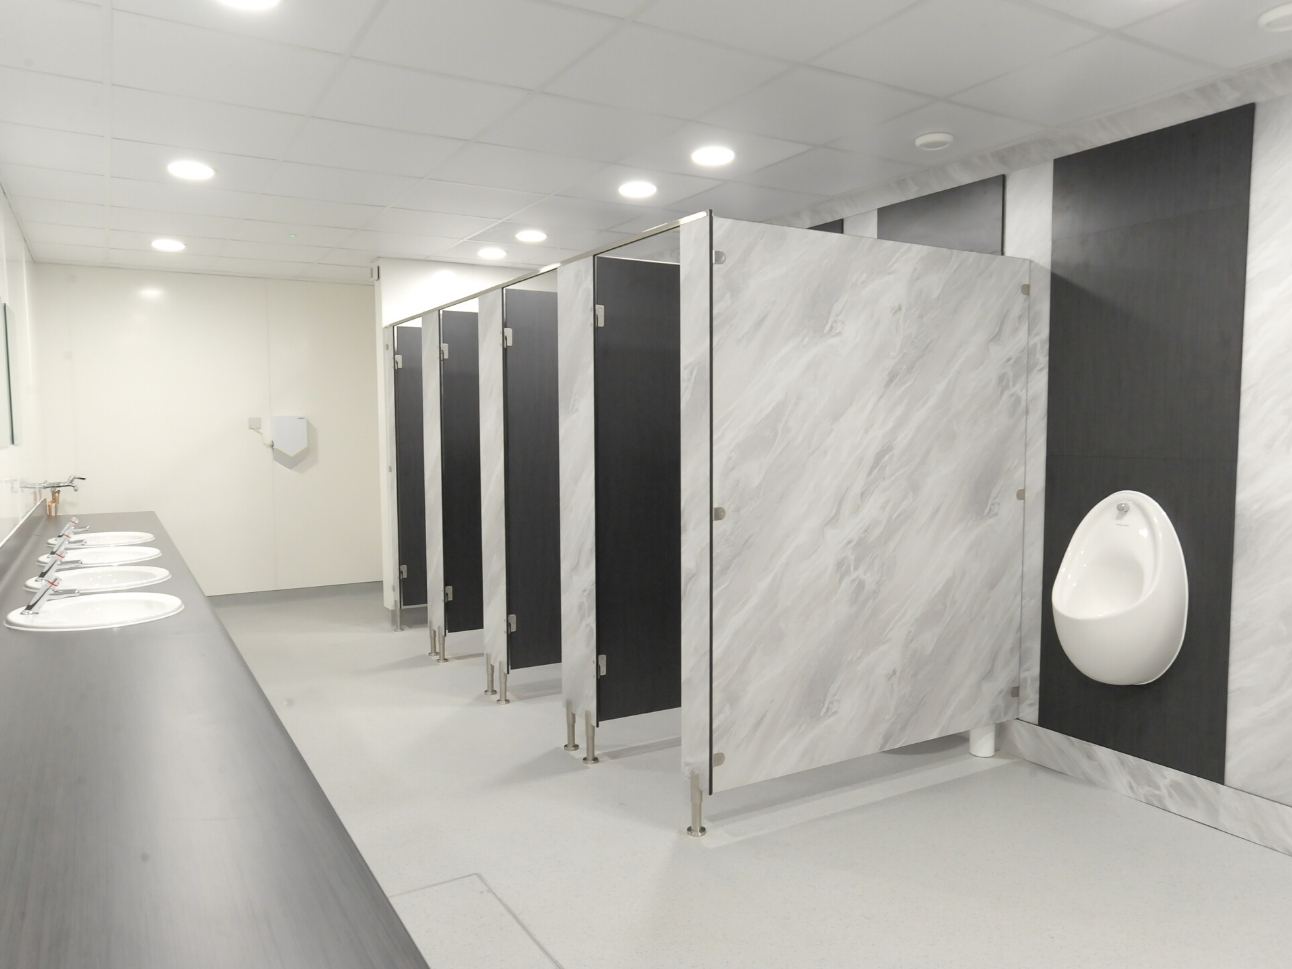 Henry Schein Washroom Refurbishment | Case Study | Commercial Washrooms